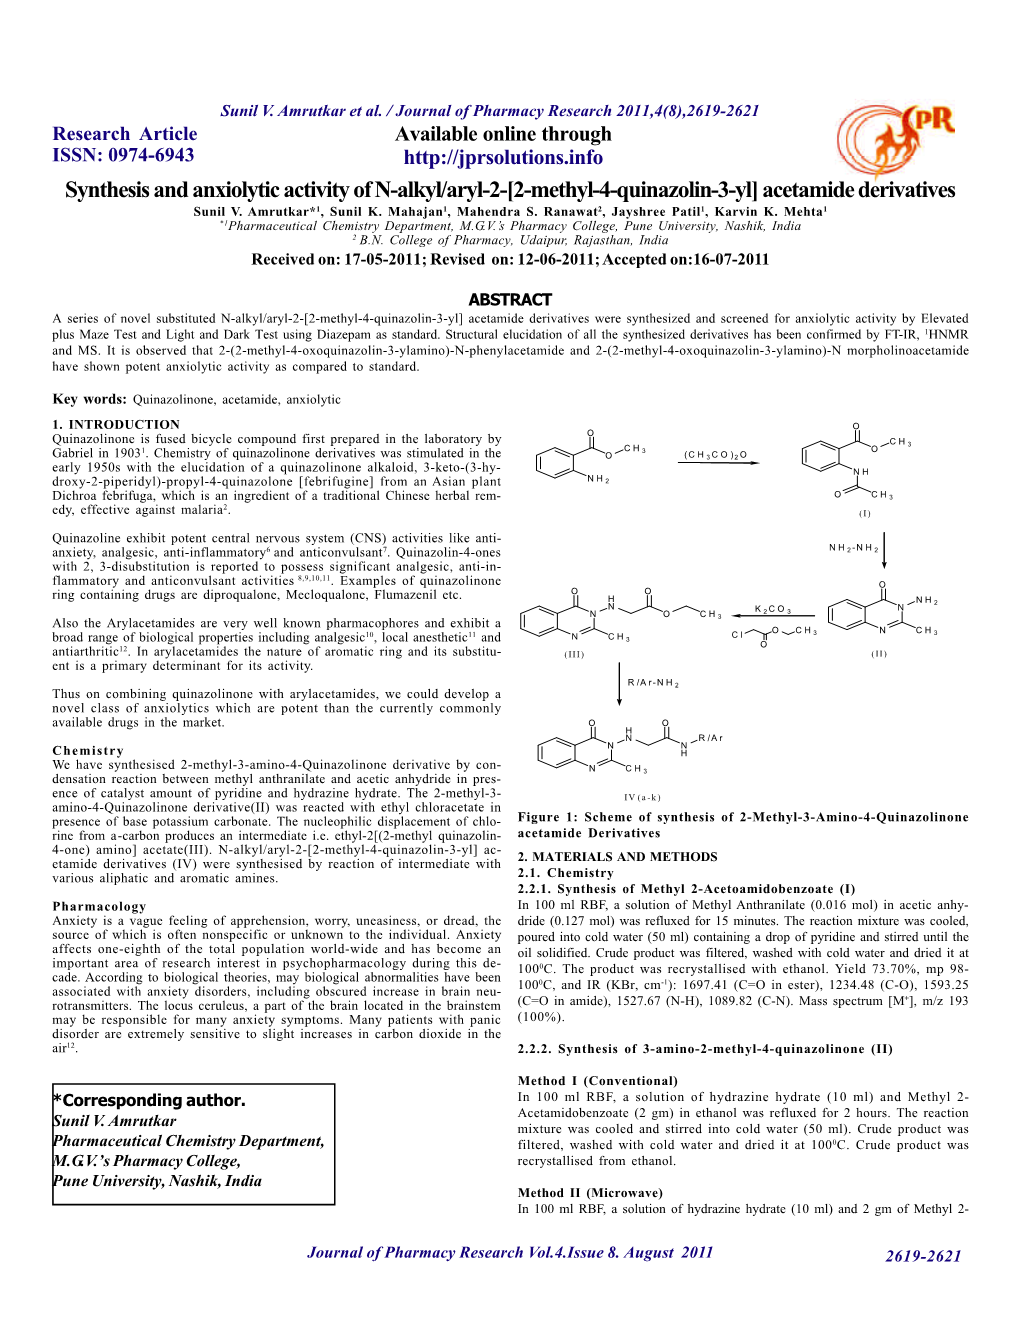 [2-Methyl-4-Quinazolin-3-Yl] Acetamide Derivatives Sunil V